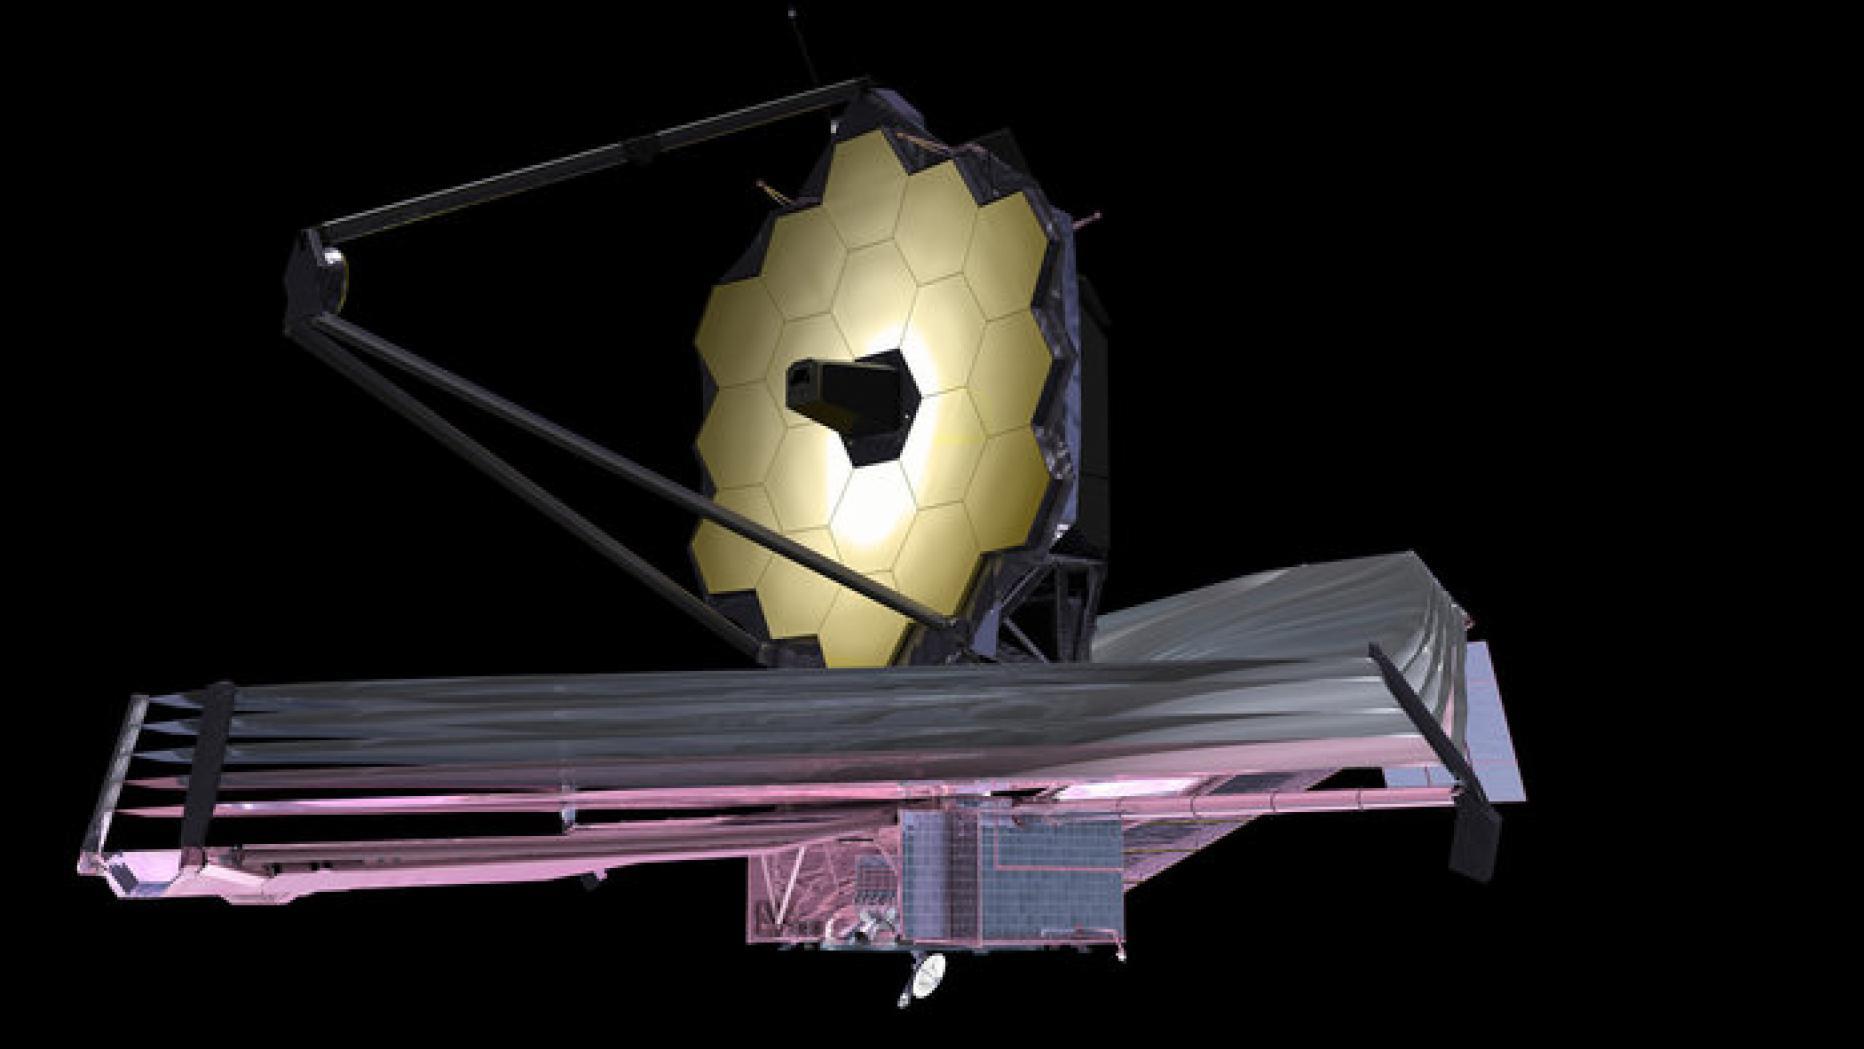 التلسكوب "جيمس ويب" يصل إلى مداره النهائي حيث سيراقب مجرات الكون الأولى